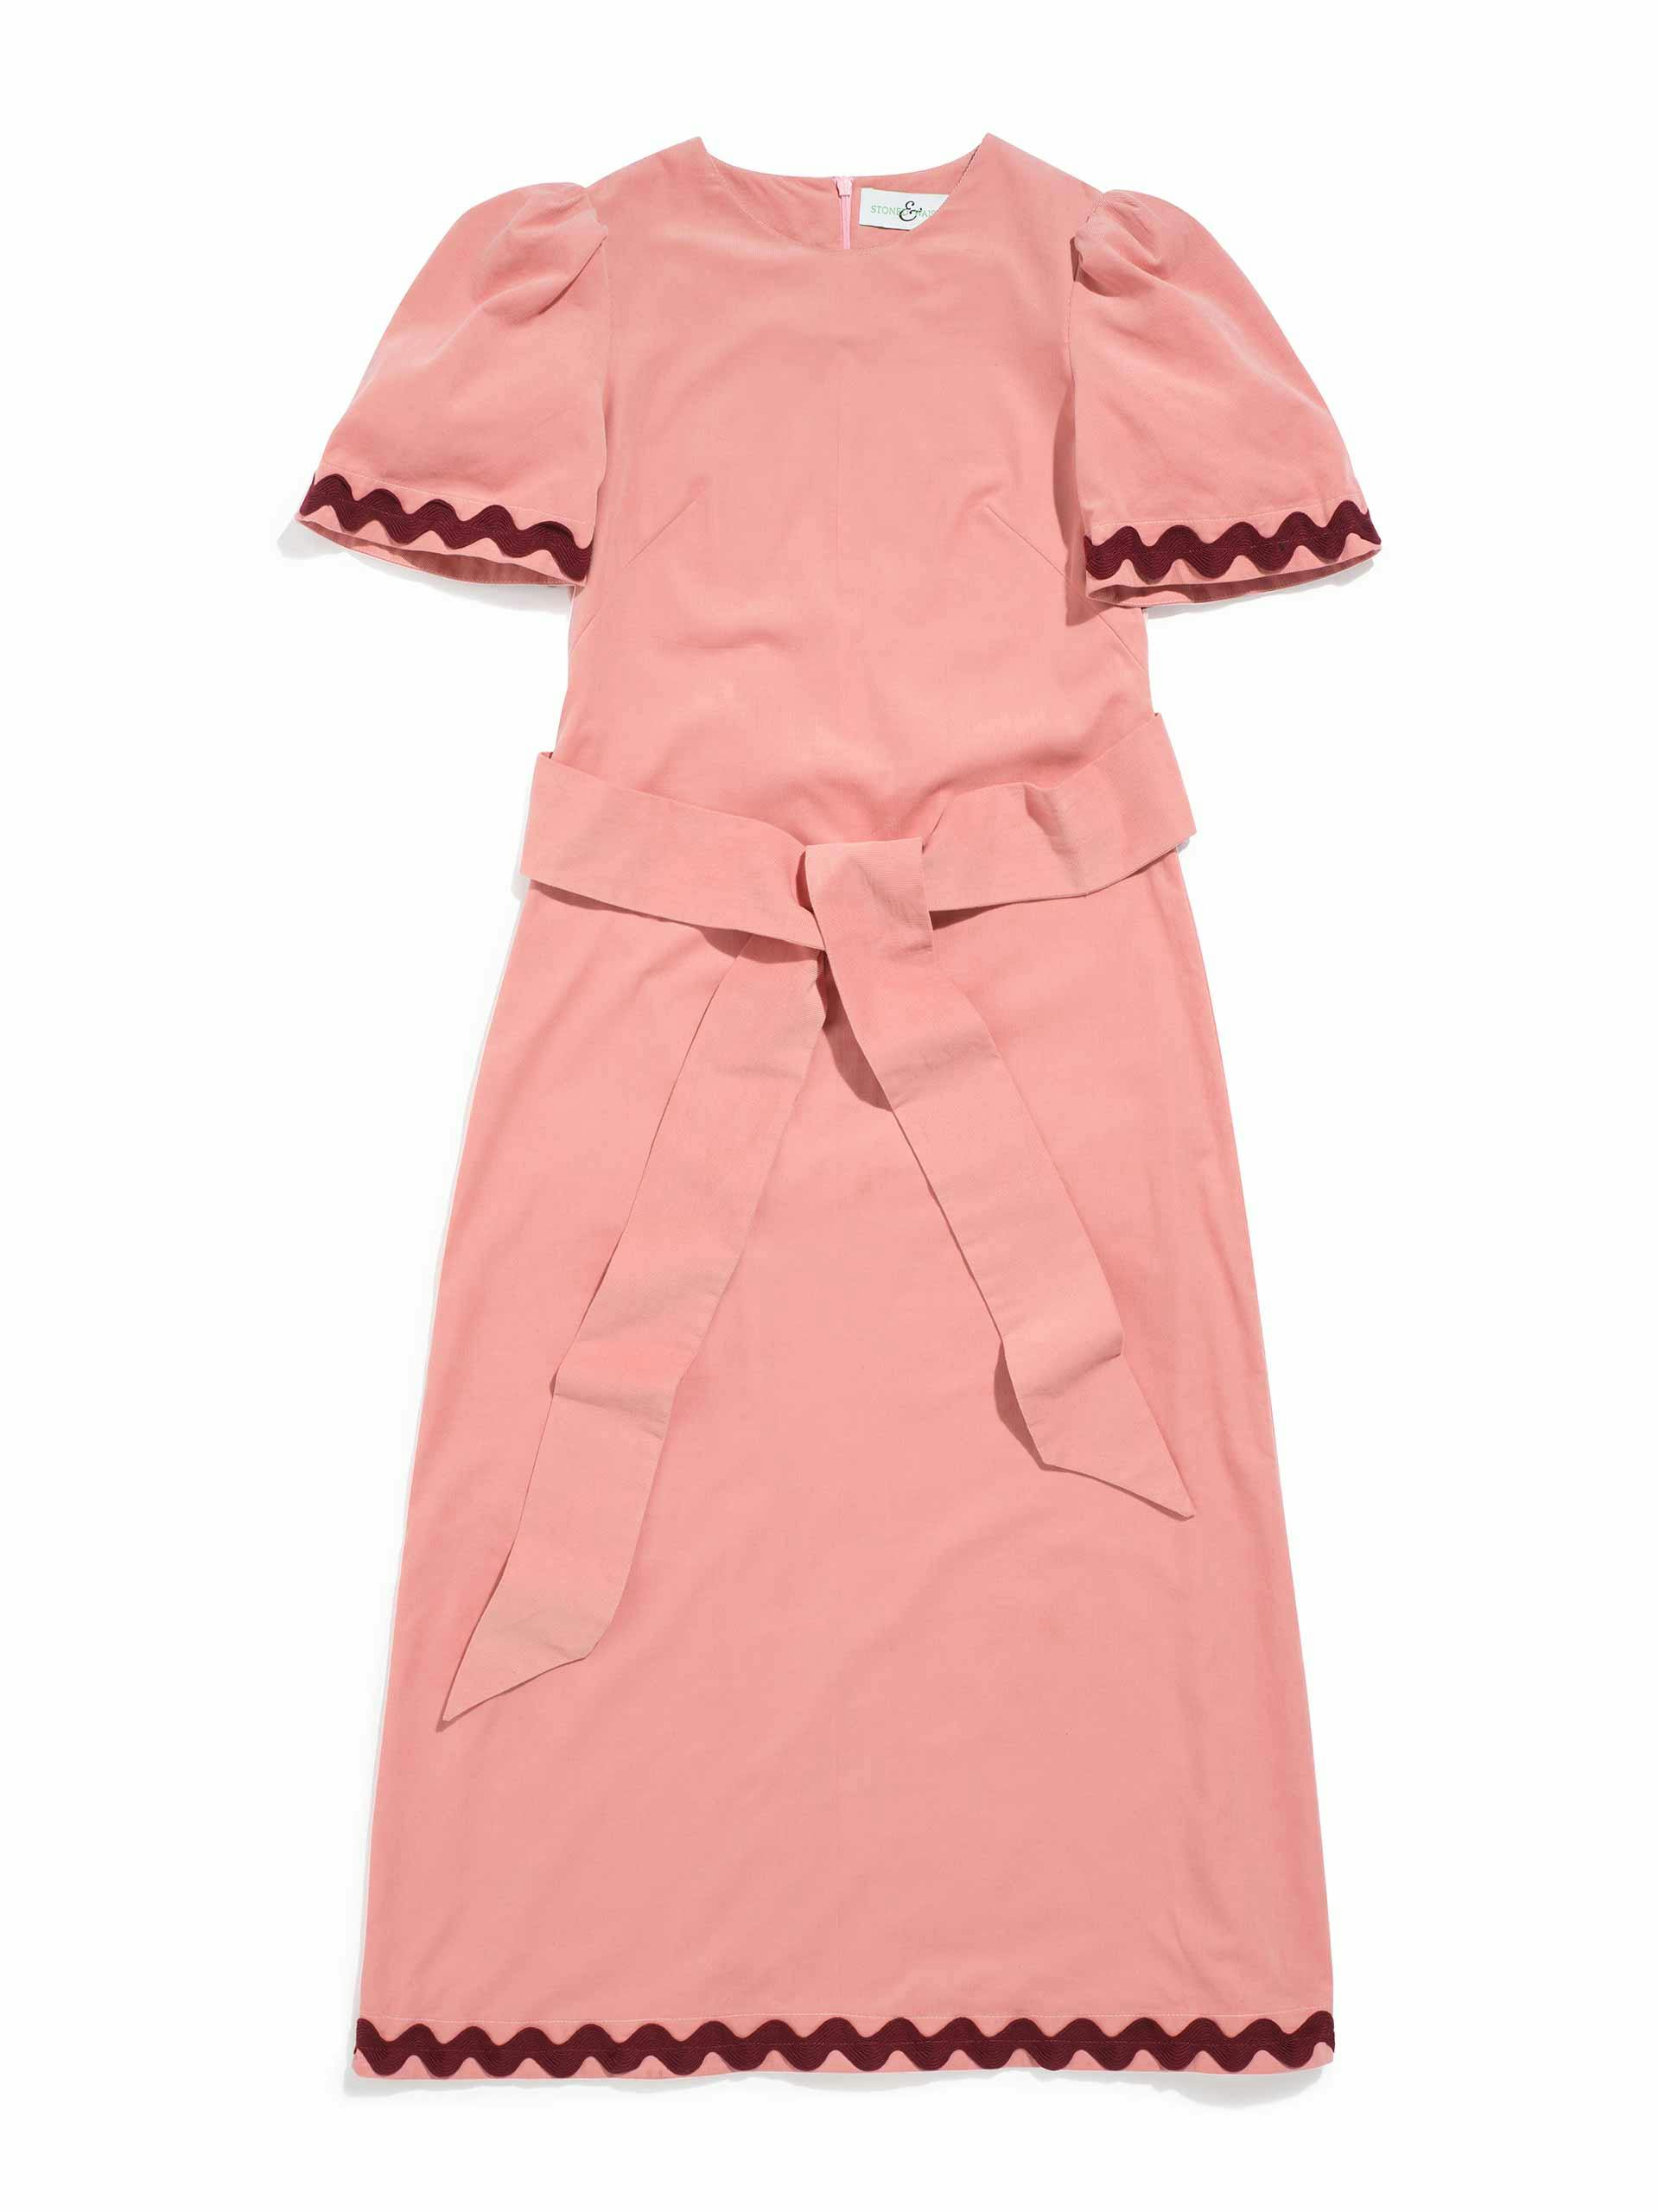 Pink needlecord dress